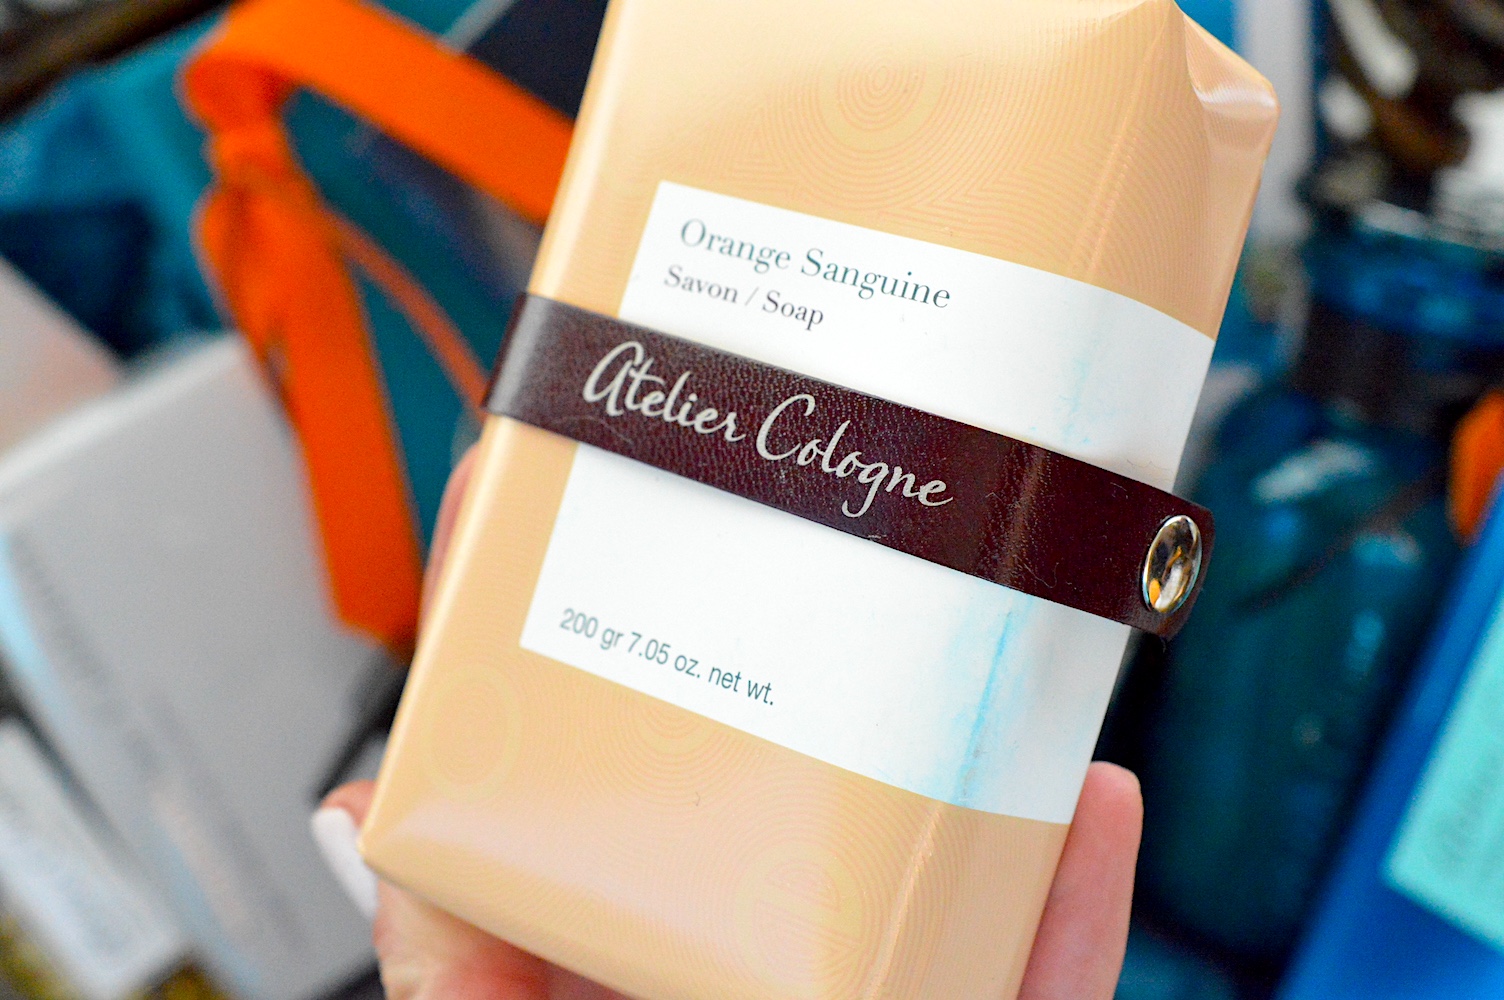 Atelier Cologne bar soap